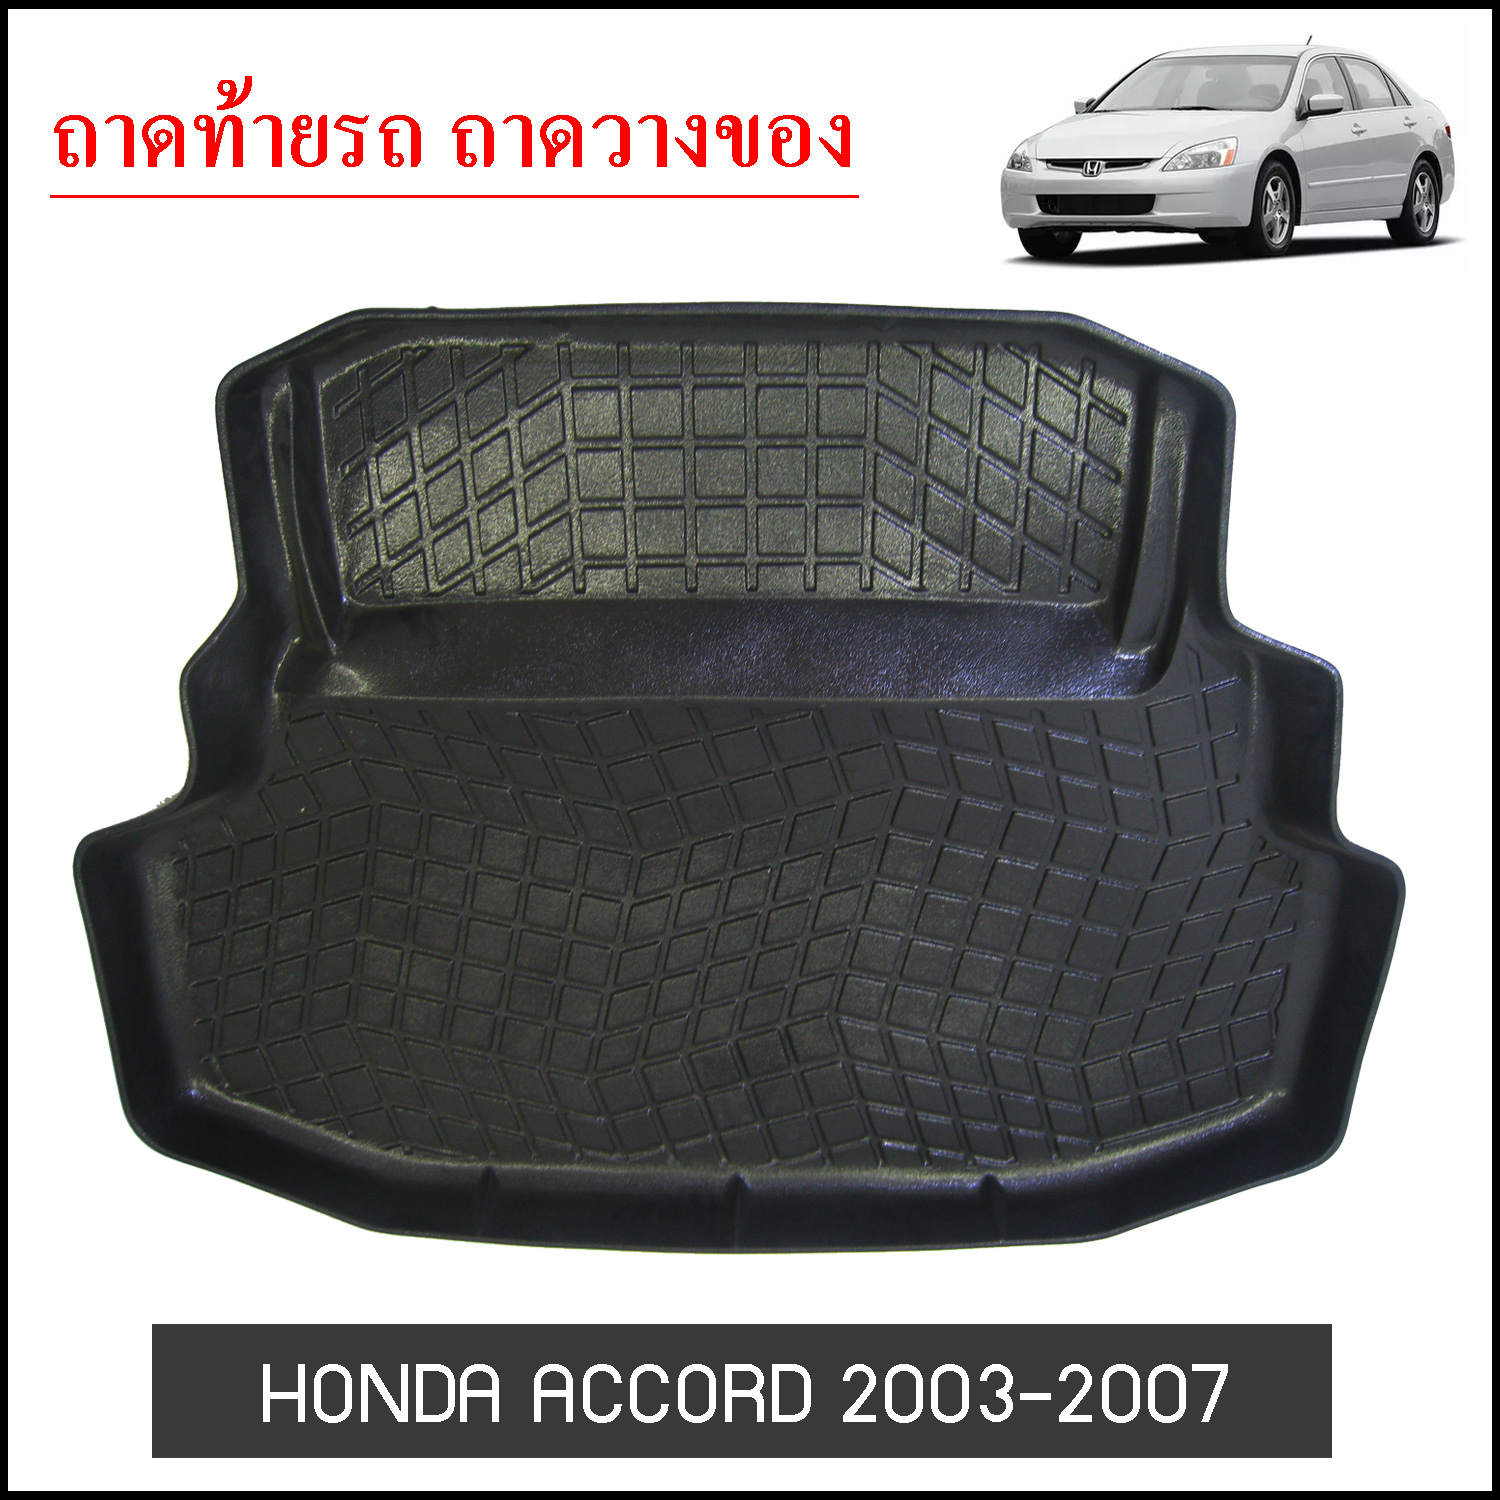 ถาดท้ายวางของ Honda Accord 2005-2007